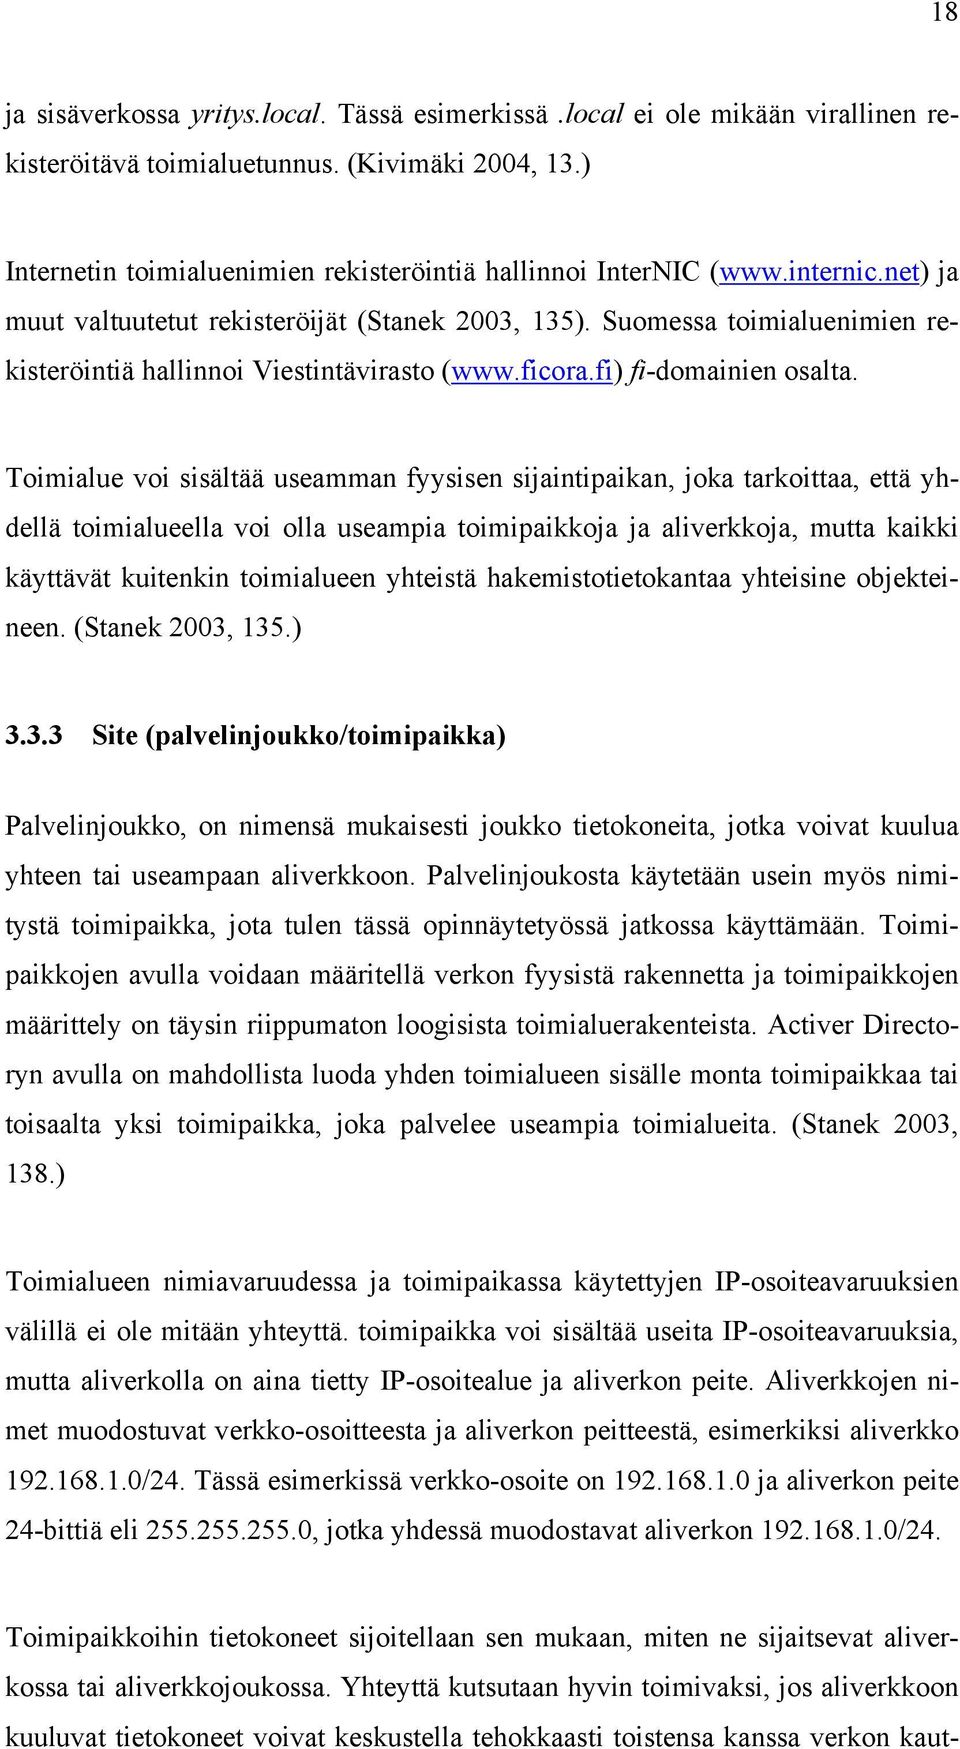 Suomessa toimialuenimien rekisteröintiä hallinnoi Viestintävirasto (www.ficora.fi) fi-domainien osalta.